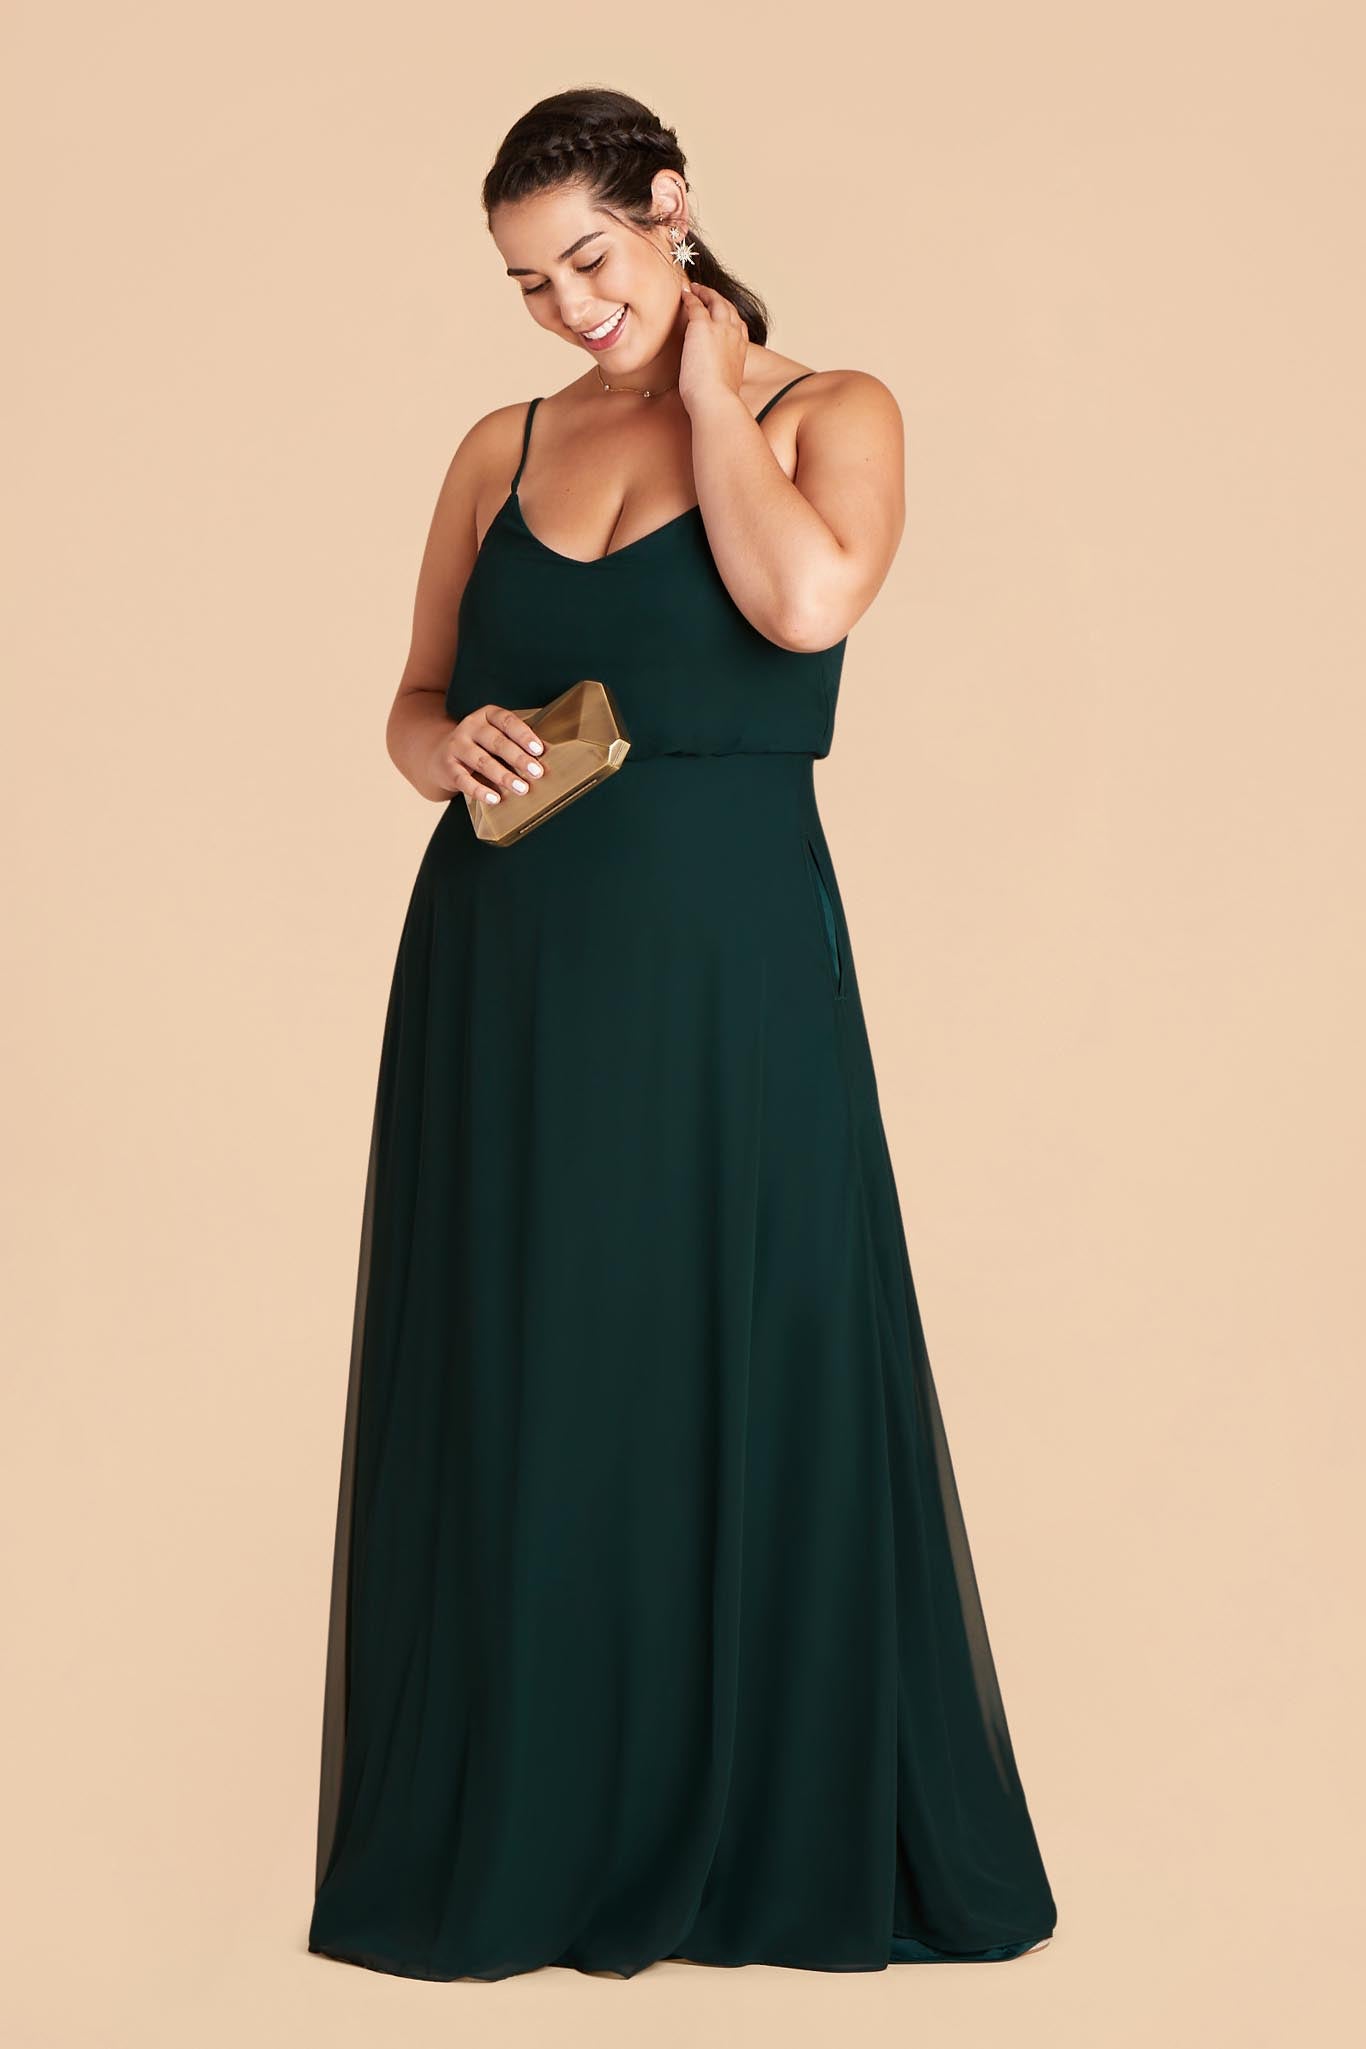 Emerald Gwennie Dress by Birdy Grey